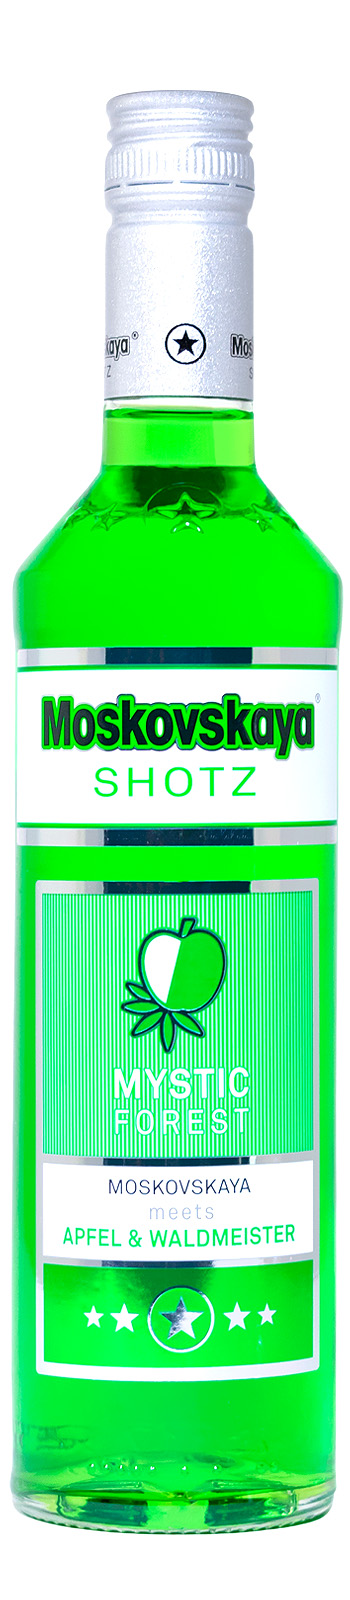 Moskovskaya Shotz Mystic Forest - 0,5L 17% vol